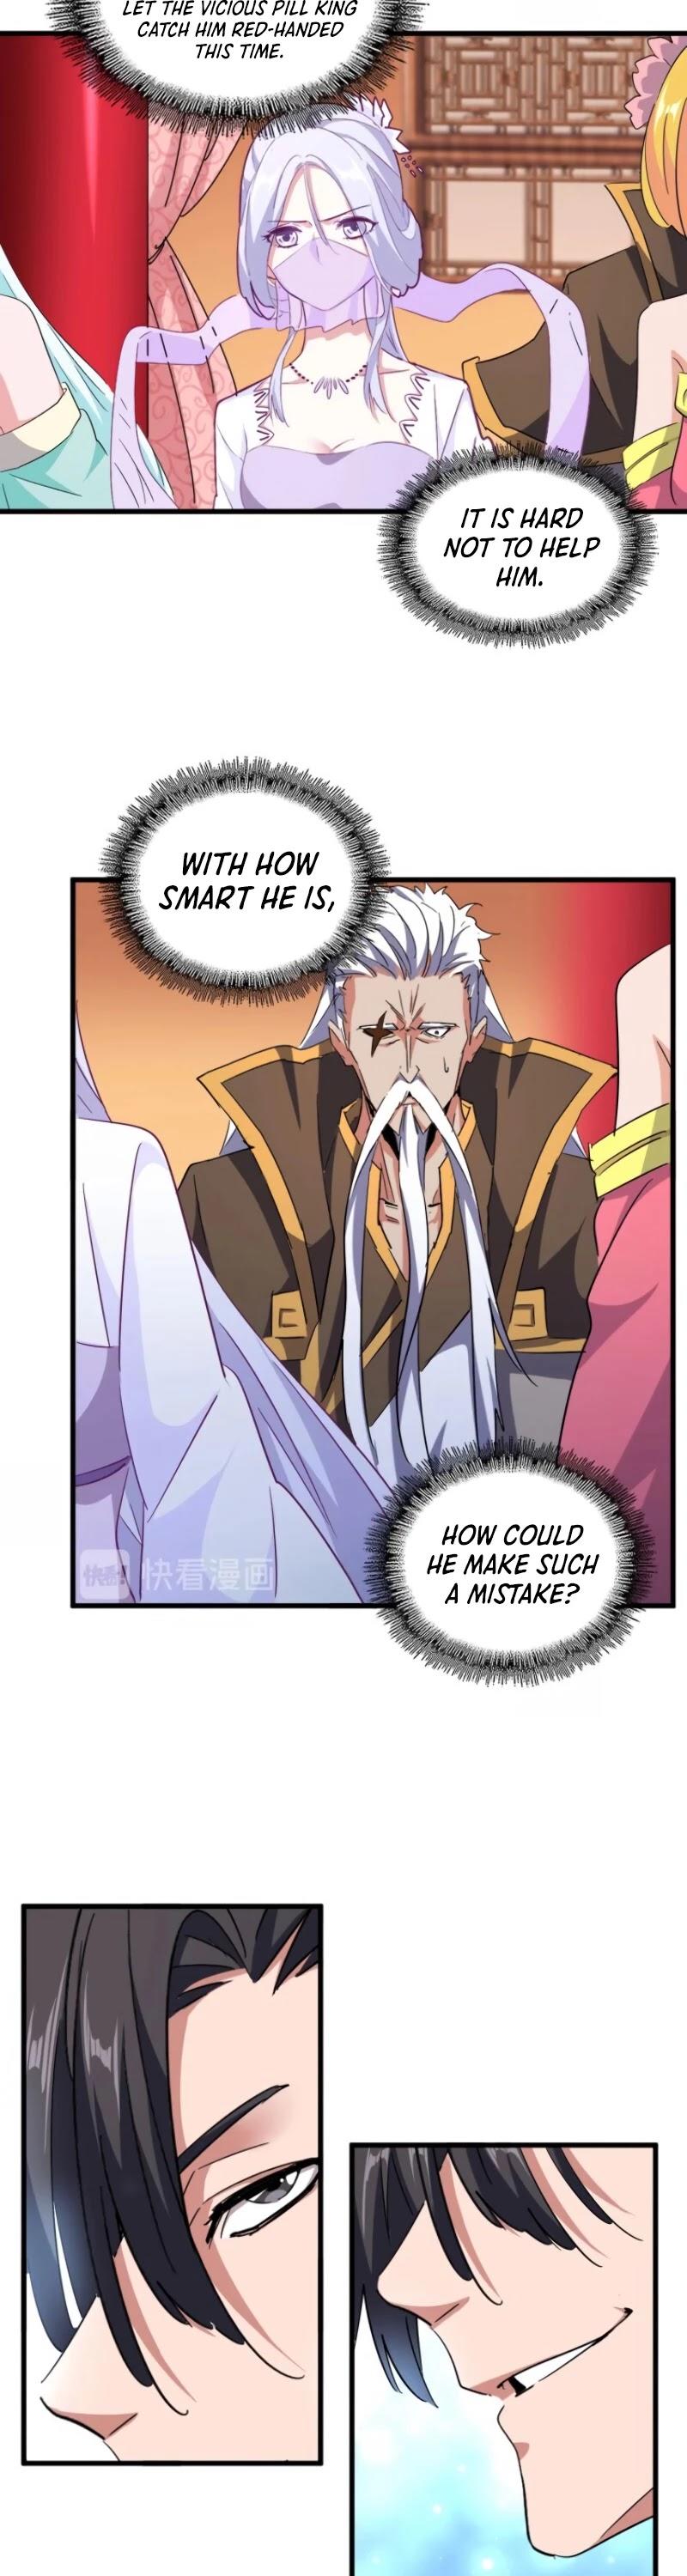 Magic Emperor Chapter 163 page 11 - Mangakakalot